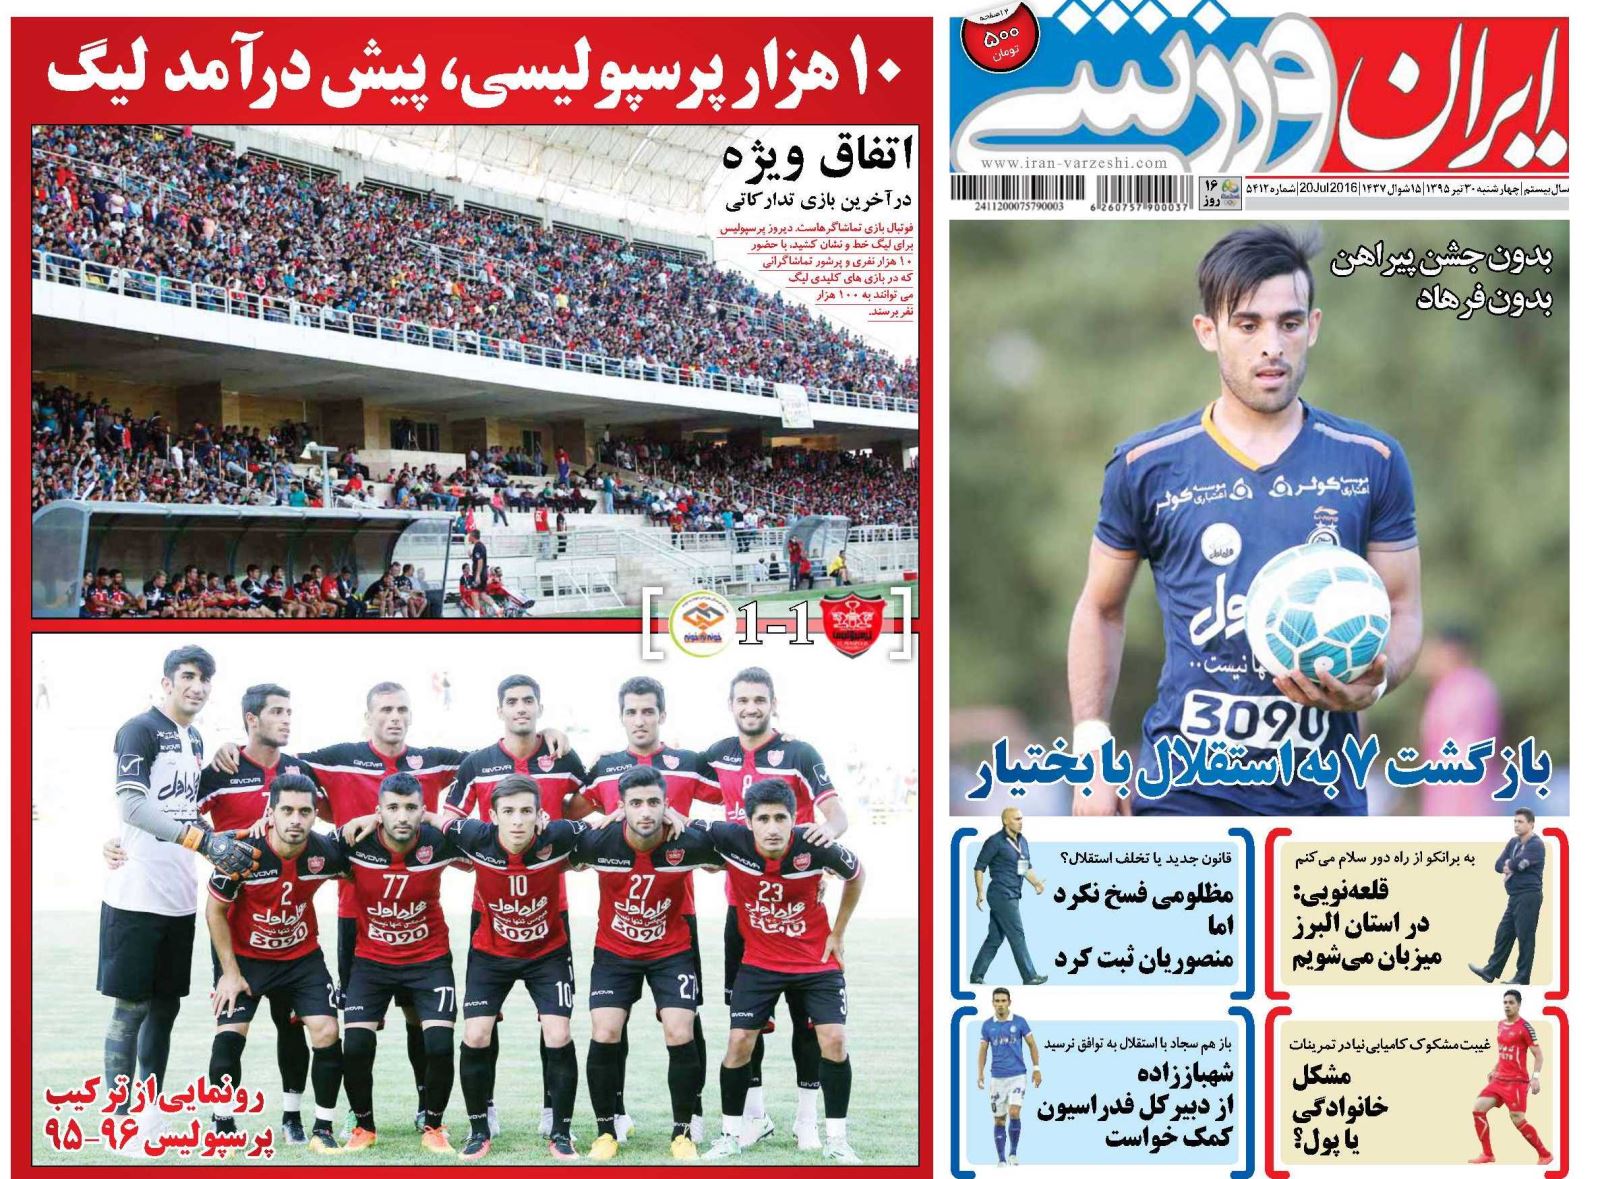 جلد ایران ورزشی/چهارشنبه 30 تیر 95